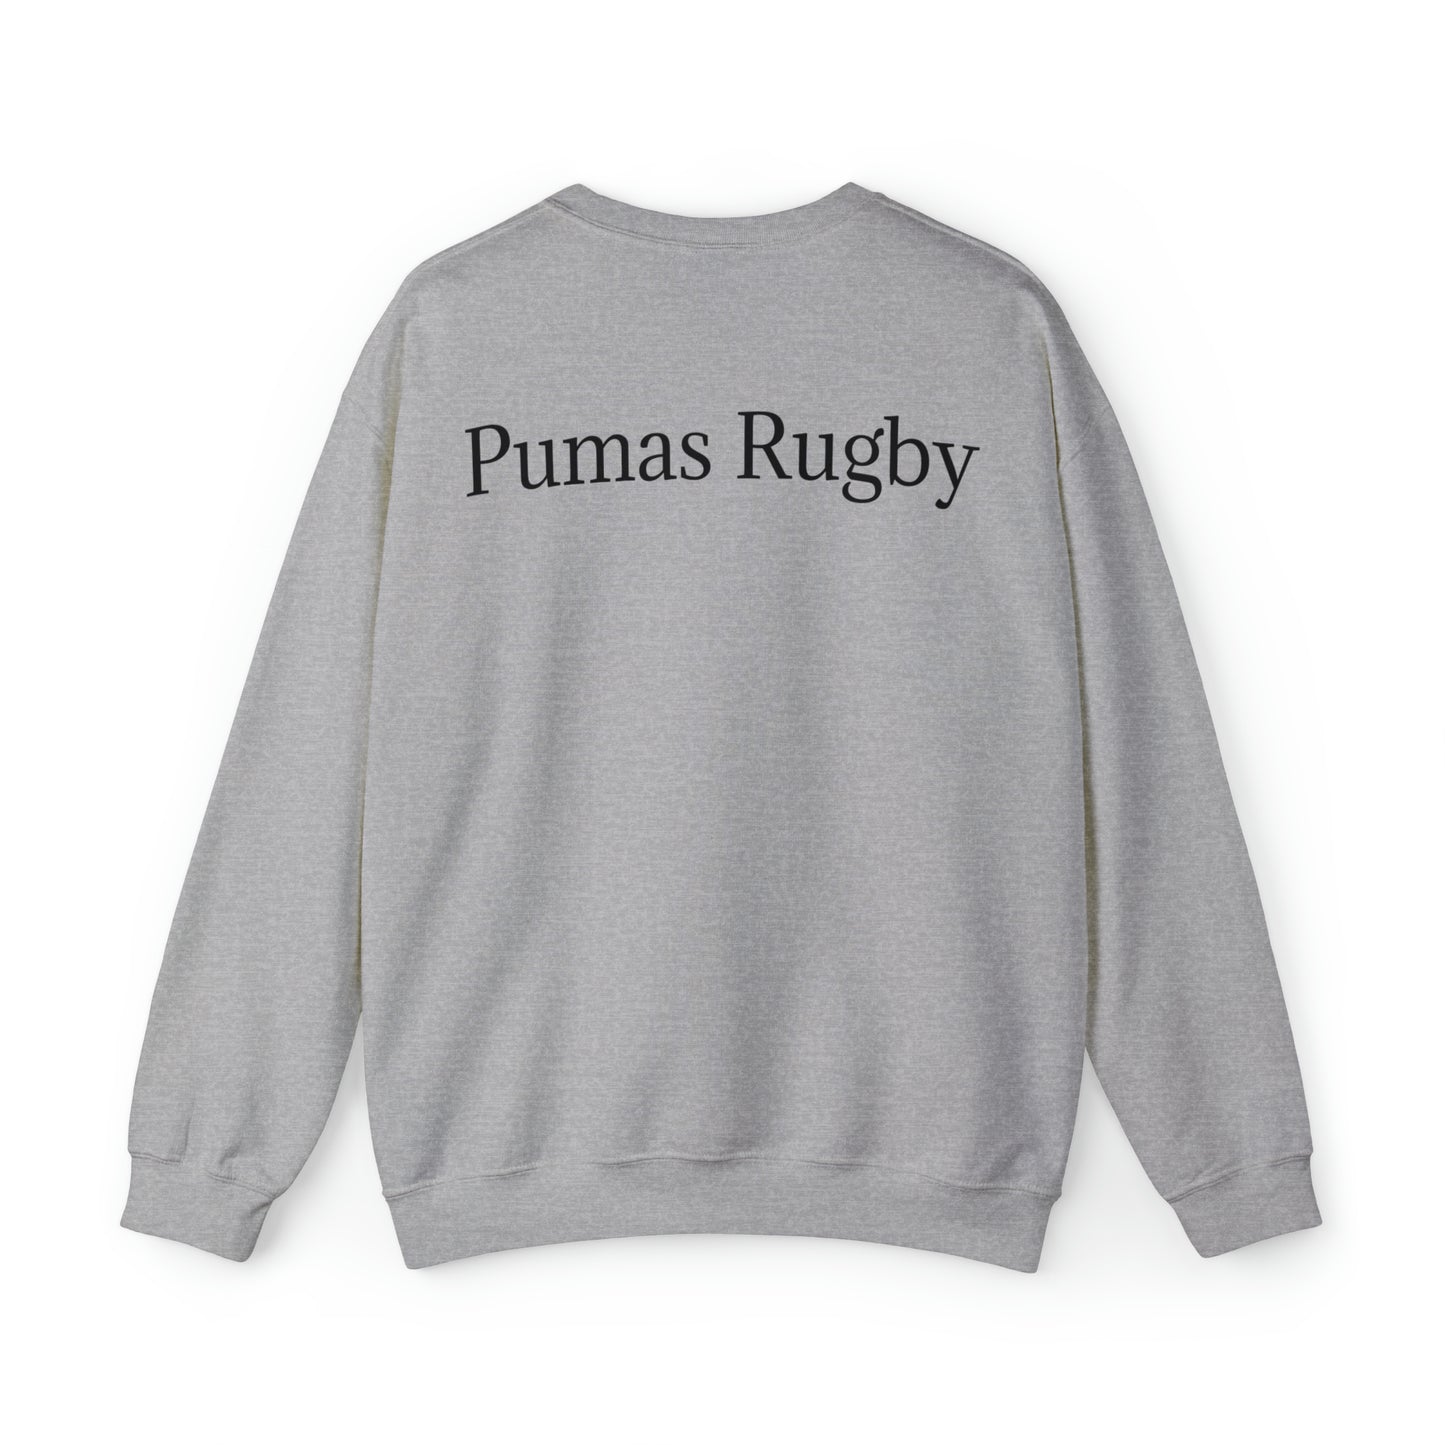 Ready Pumas - light sweatshirts